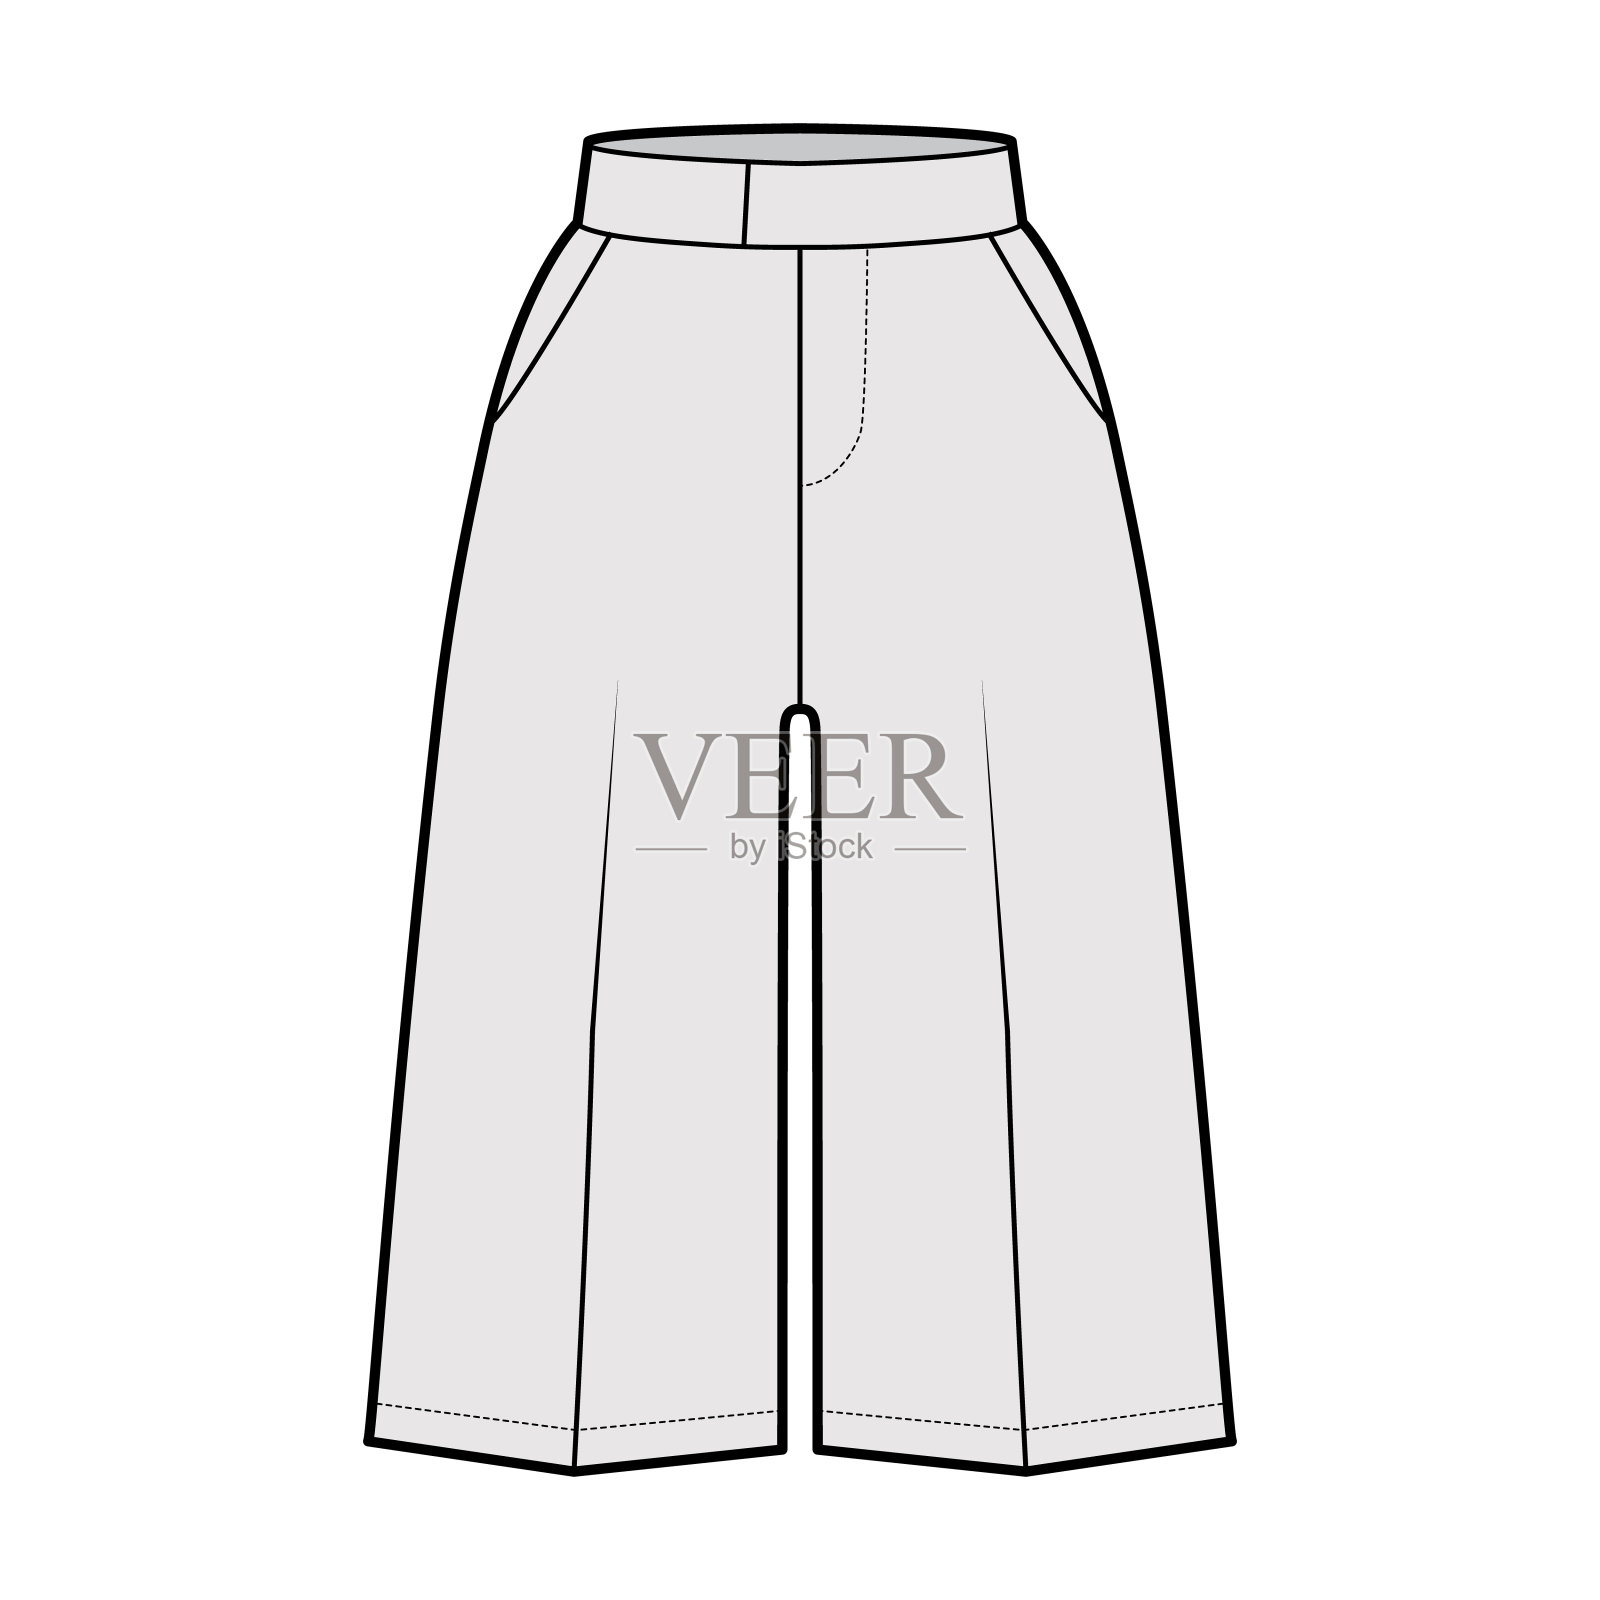 短百慕达礼服裤技术时尚插图与膝盖，单褶，正常腰部，开衩口袋设计元素图片